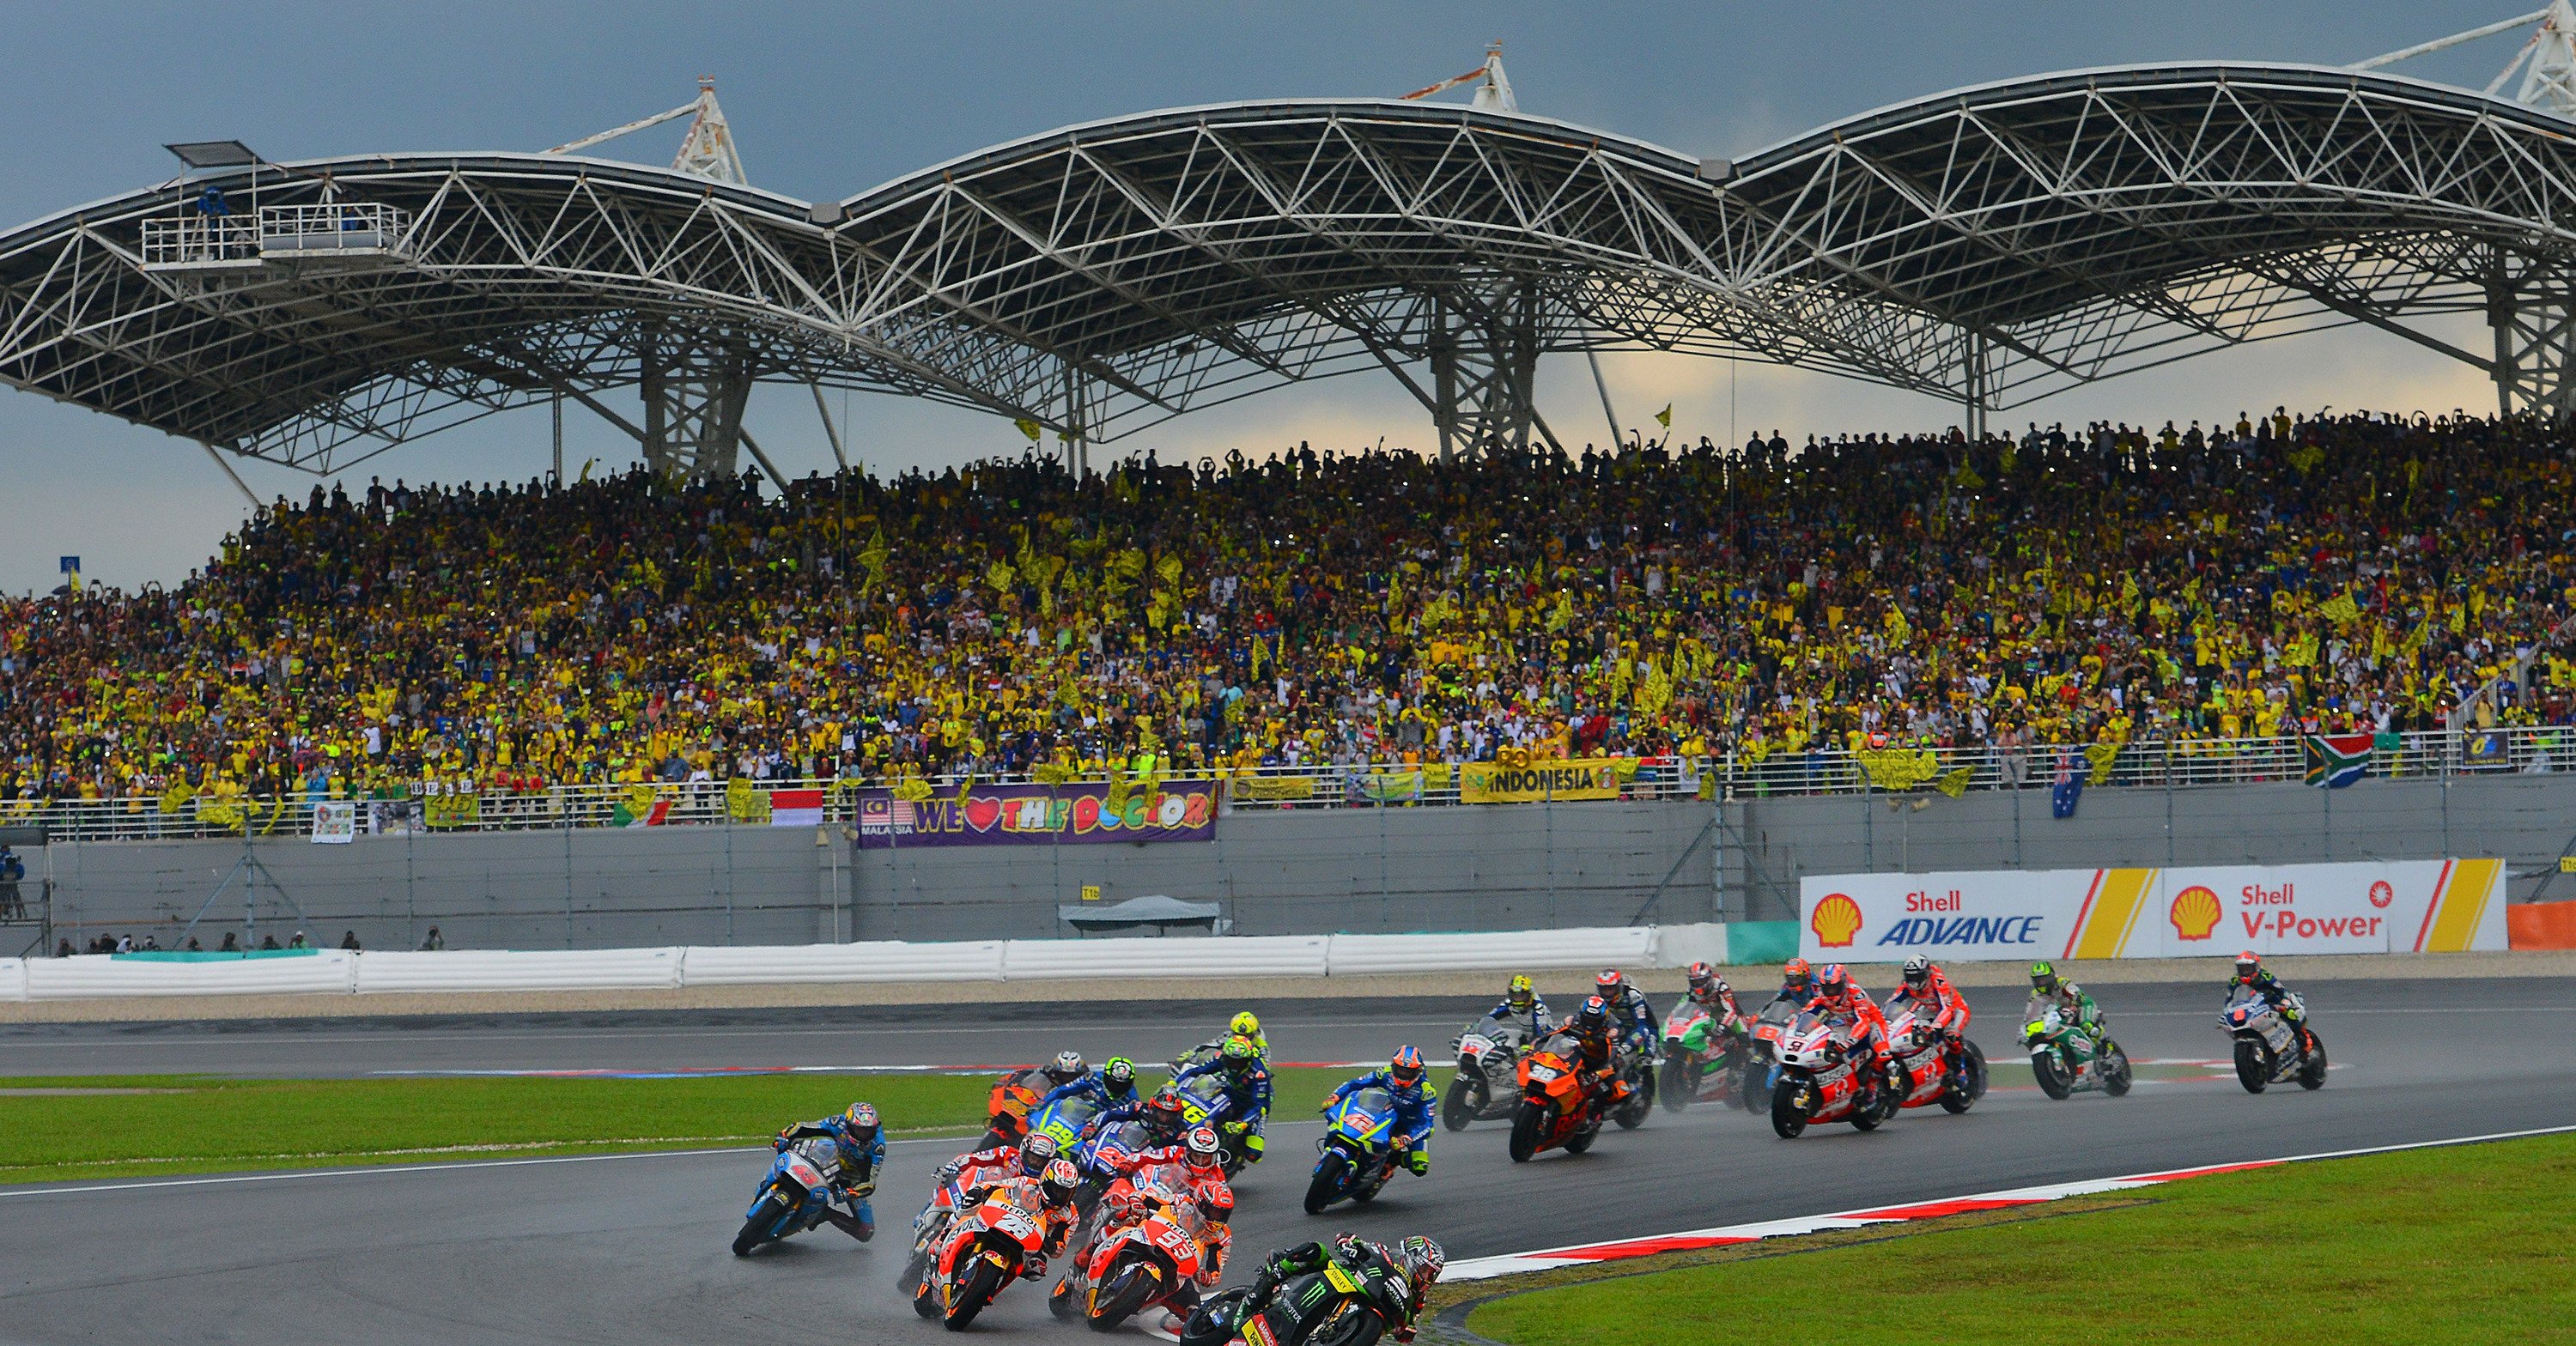 Chi vincer&agrave; la gara MotoGP di Sepang?